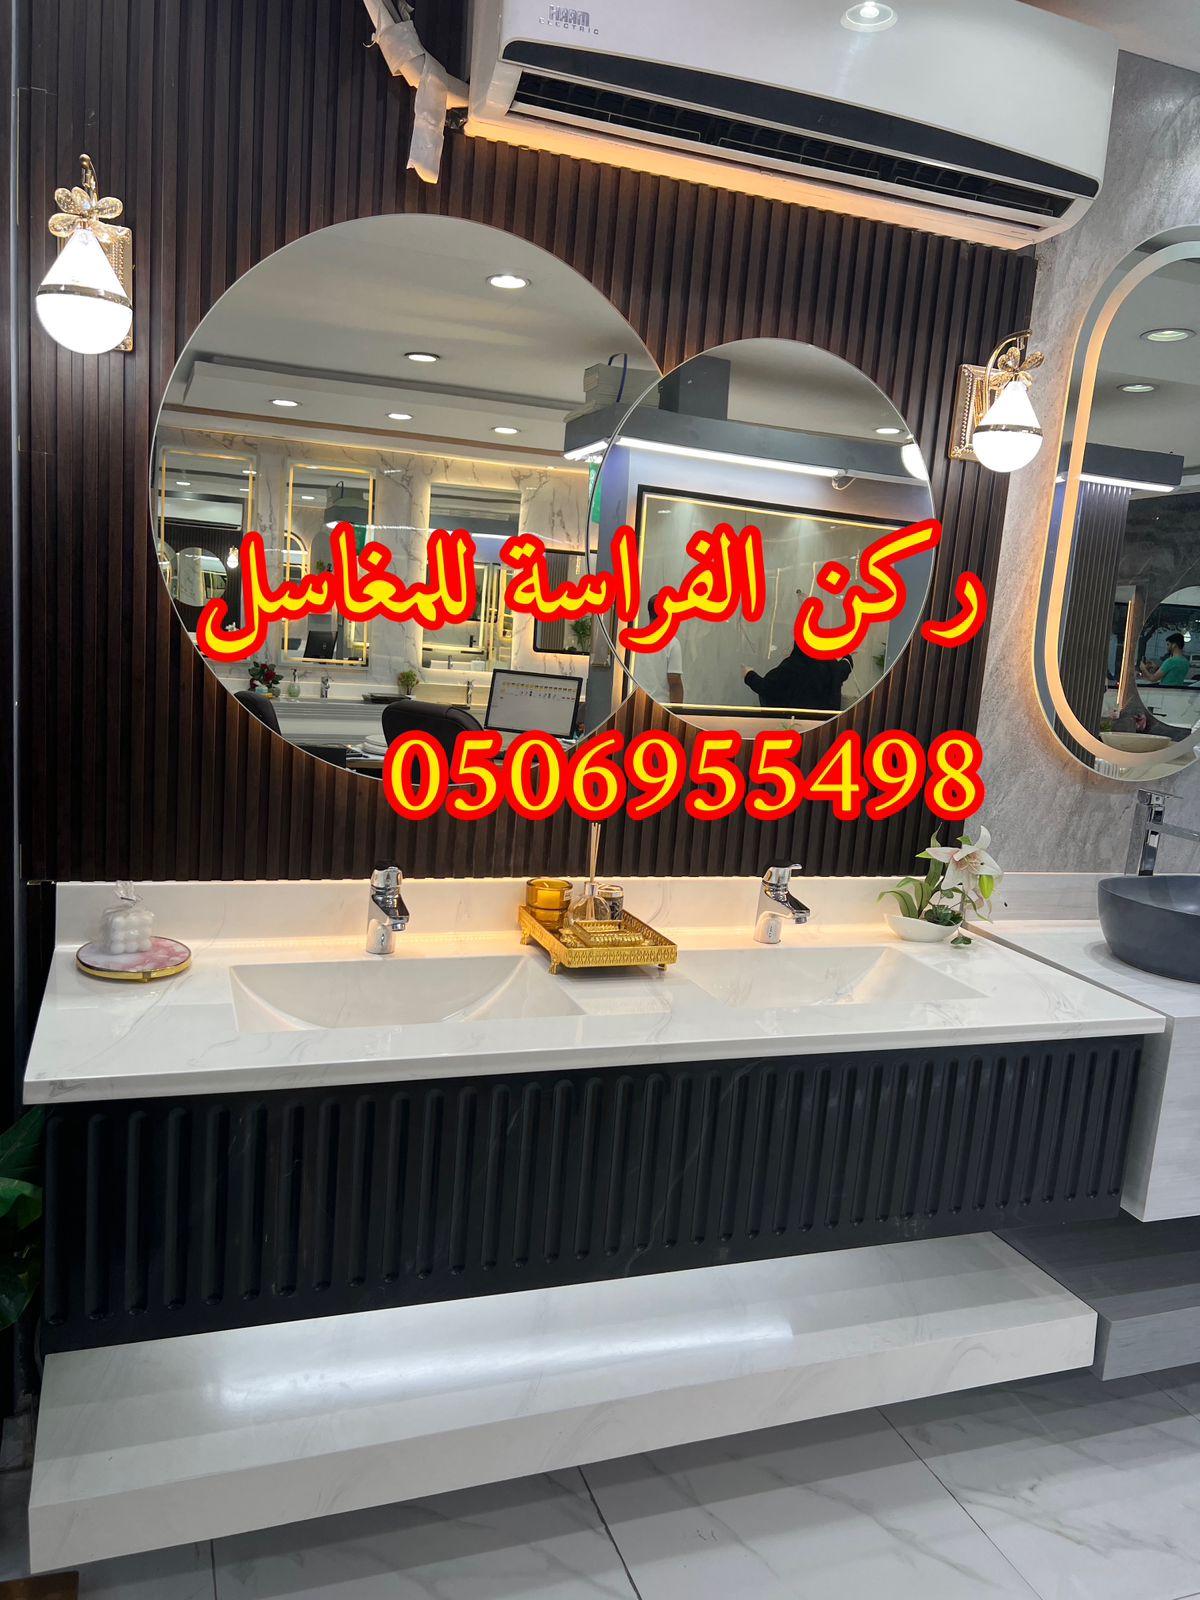 تركيب مغاسل حمامات رخام في الرياض, 0506955498 457444111